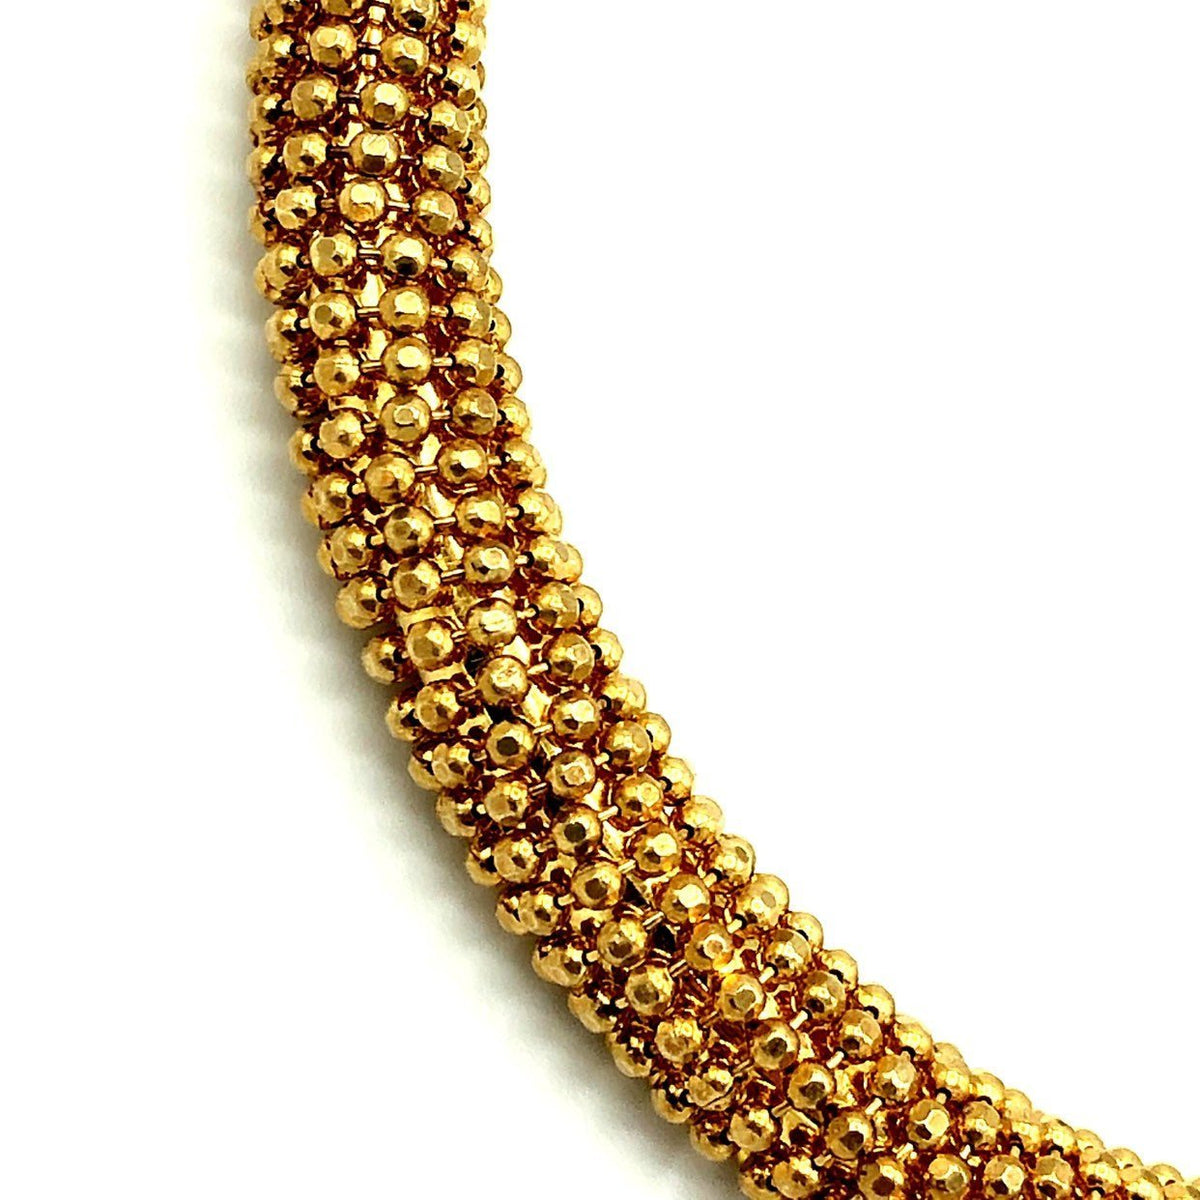 Milor Sterling Gold Washed Hinged Vintage Bangle Bracelet - 24 Wishes Vintage Jewelry